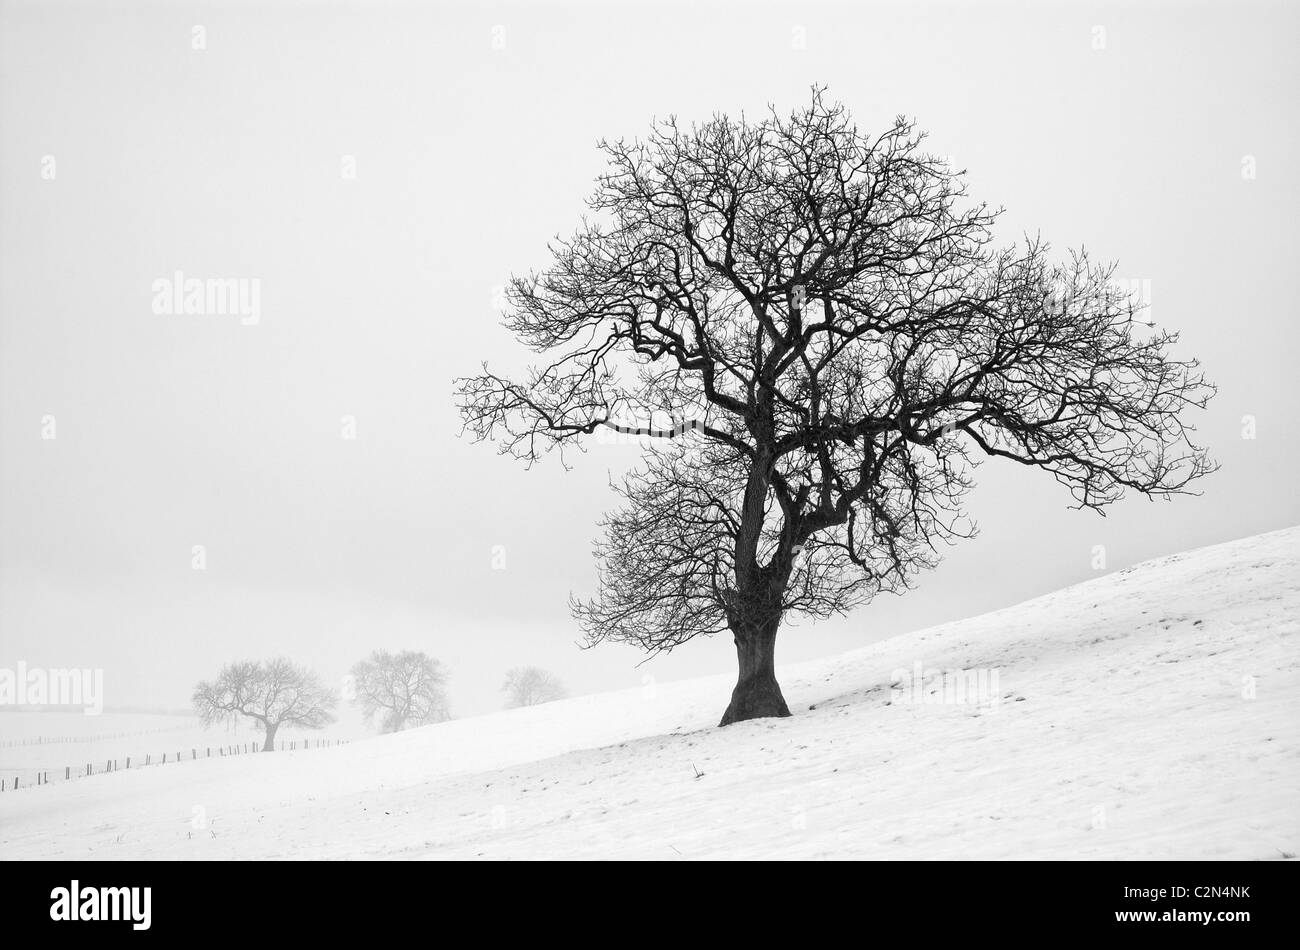 Des arbres solitaires dans un paysage d'hiver Banque D'Images